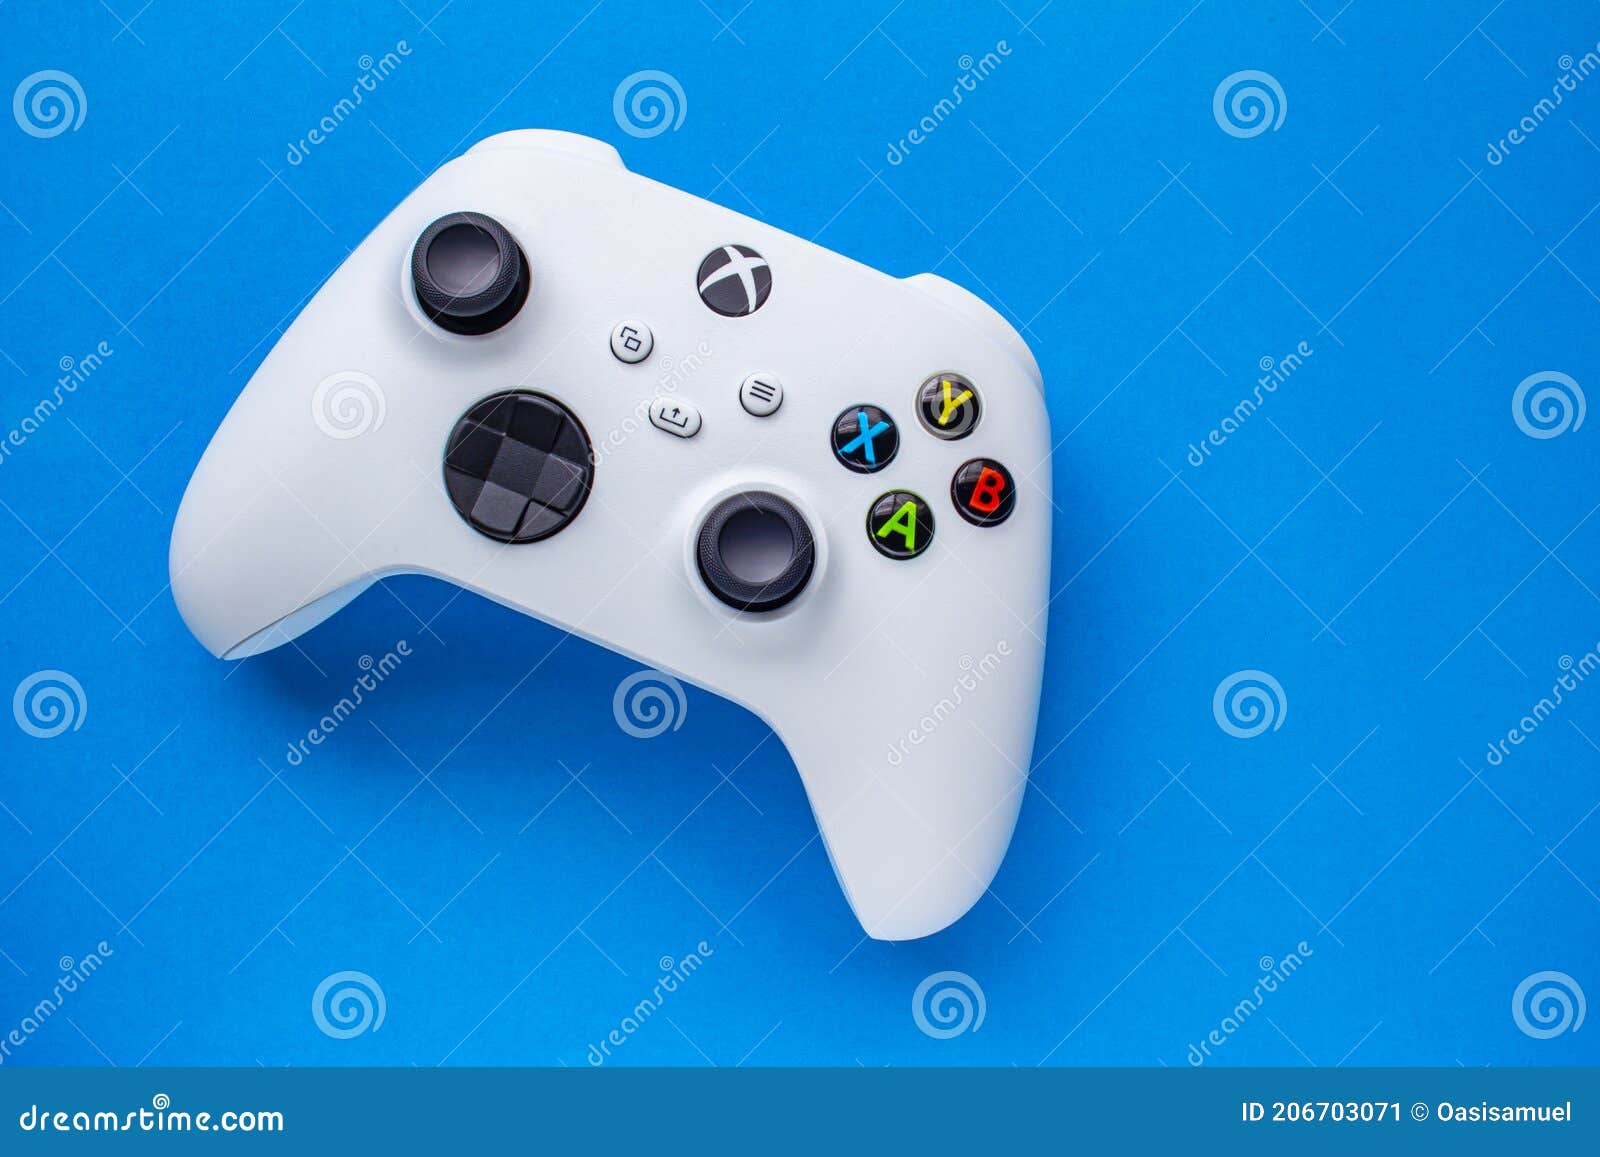 Tay cầm Xbox Wireless Controller được thiết kế độc đáo với nhiều tính năng tiên tiến để mang đến trải nghiệm chơi game tuyệt vời. Hãy cùng chiêm ngưỡng hình ảnh tay cầm này để đắm chìm trong thế giới game đầy mê hoặc.